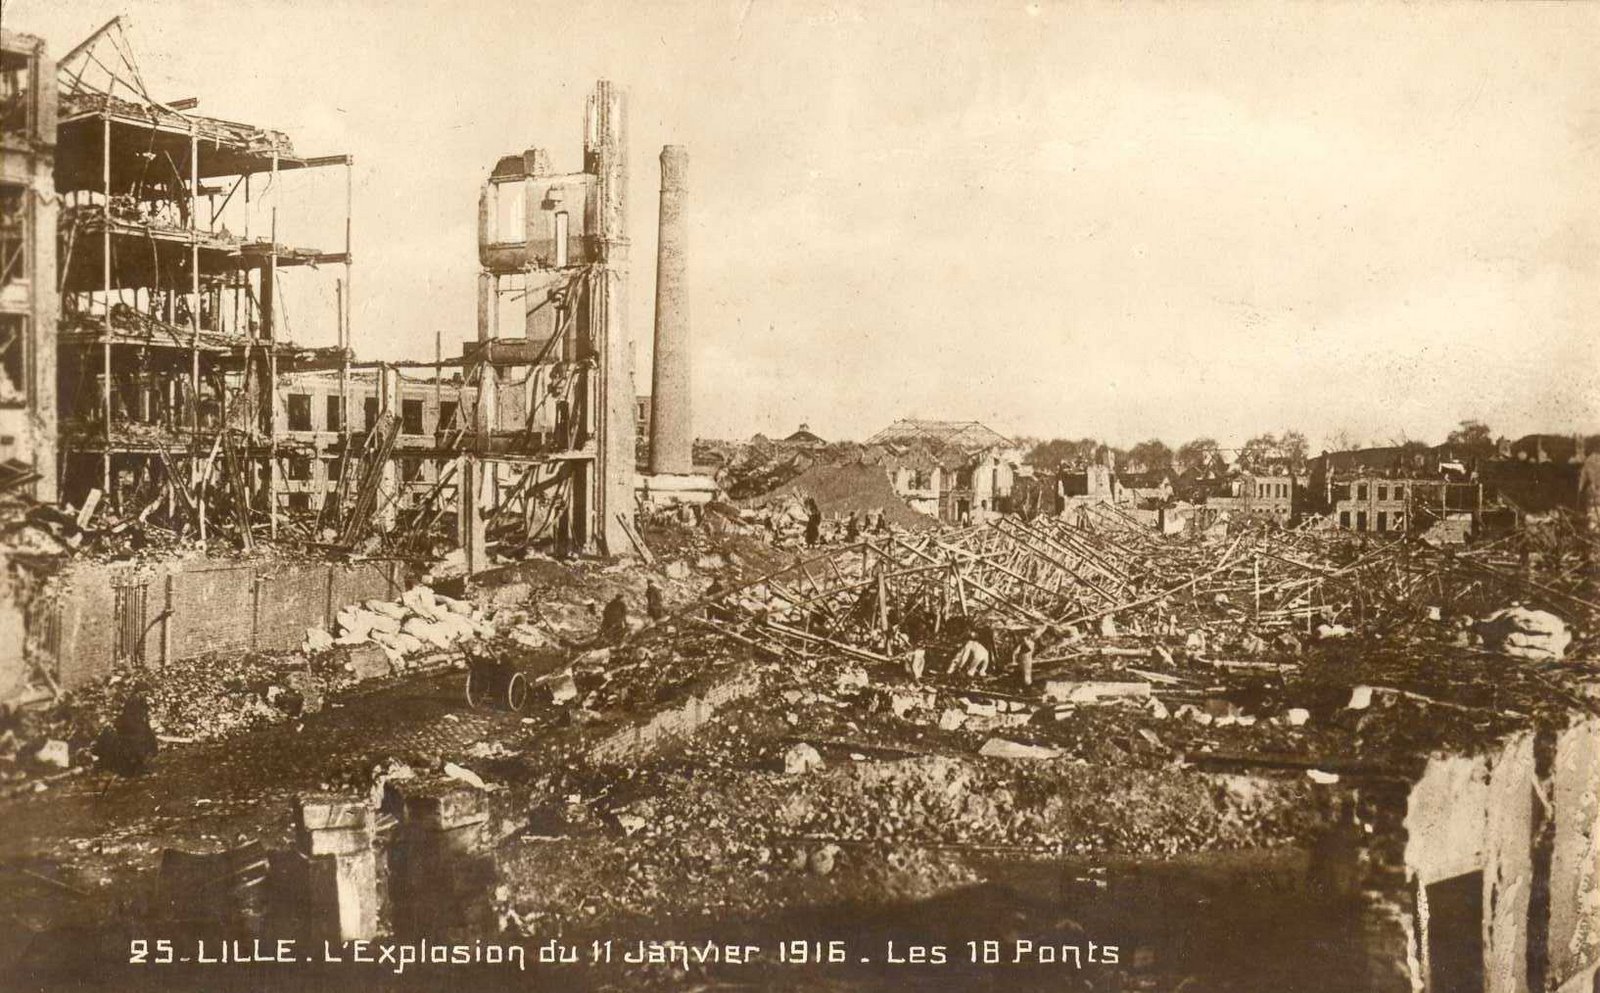 [Lille+-+explosion+11+janvier+1916+-+les+18+ponts.jpg]